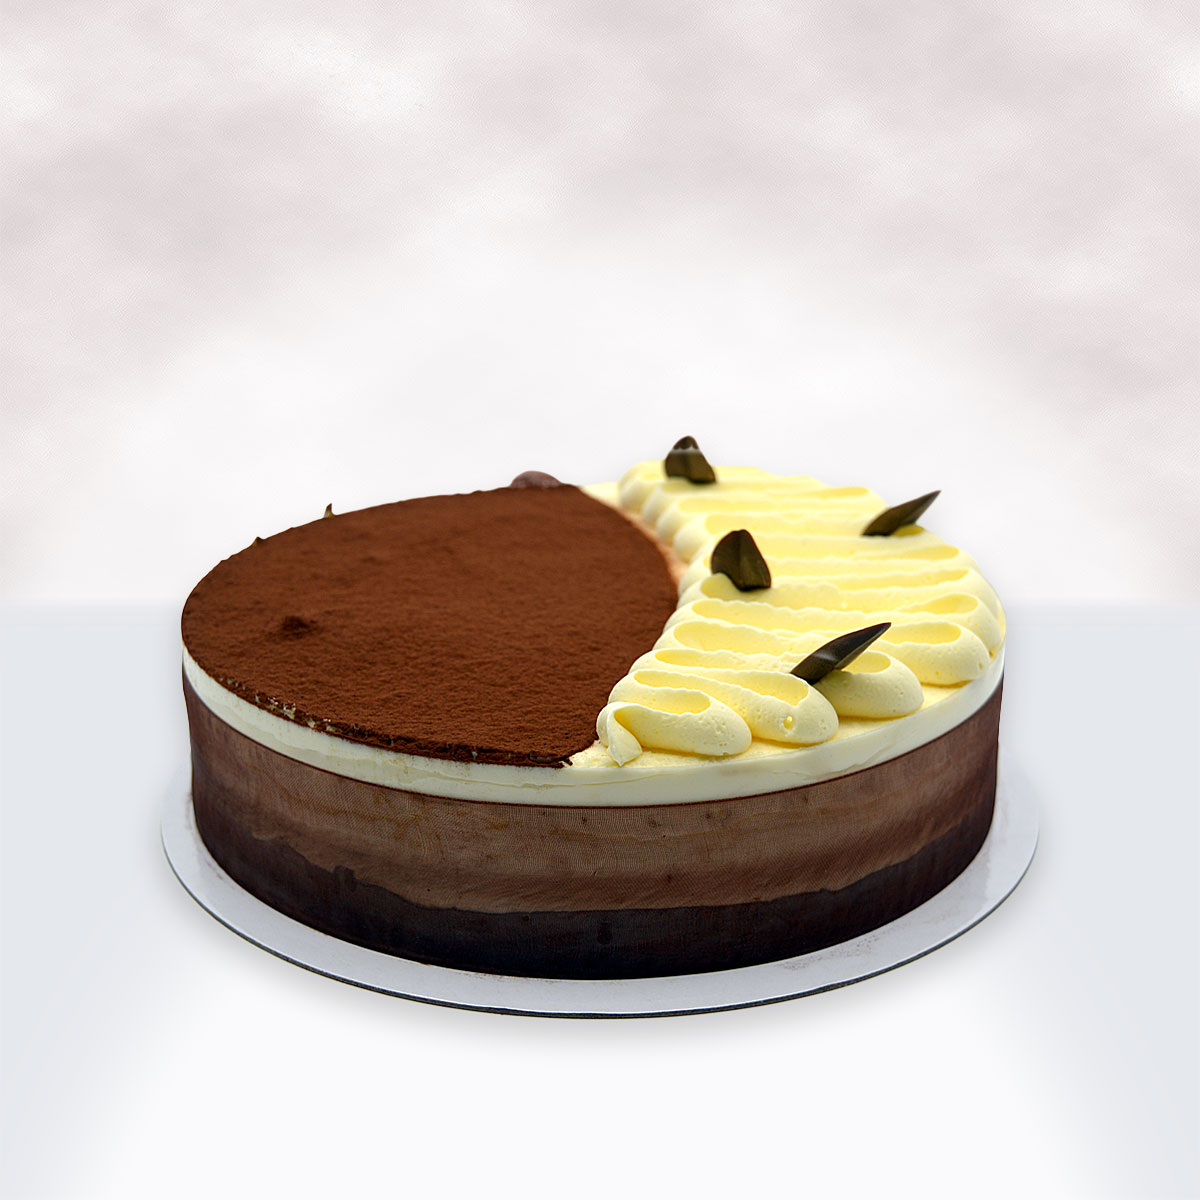 Tiramisu Cake with Mascarpone Frosting - Eat Love Eat